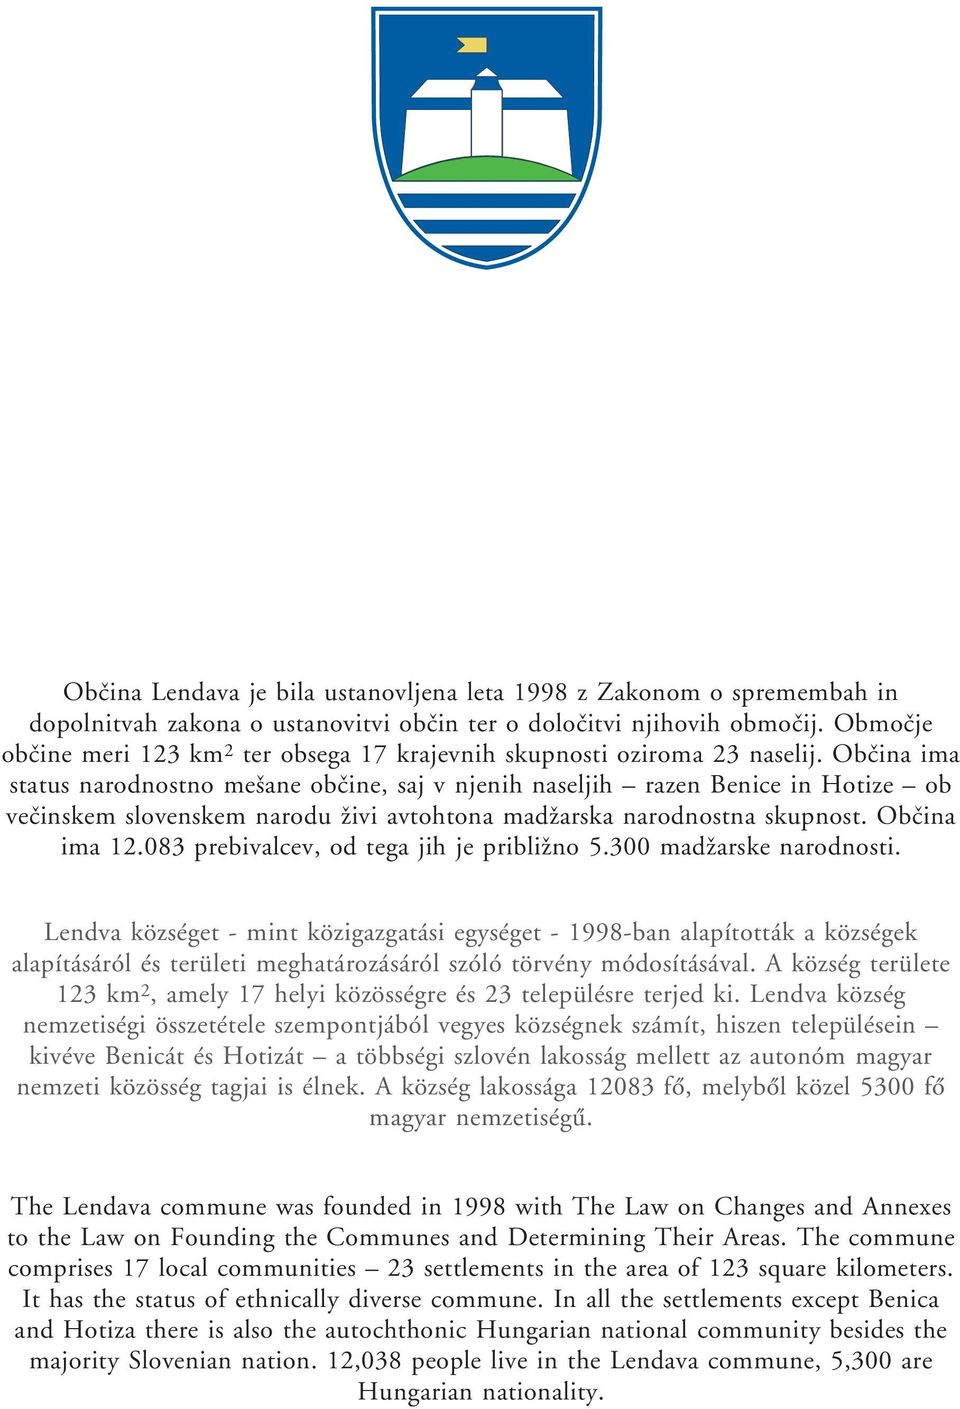 Obœina ima status narodnostno meøane obœine, saj v njenih naseljih razen Benice in Hotize ob veœinskem slovenskem narodu æivi avtohtona madæarska narodnostna skupnost. Obœina ima 12.